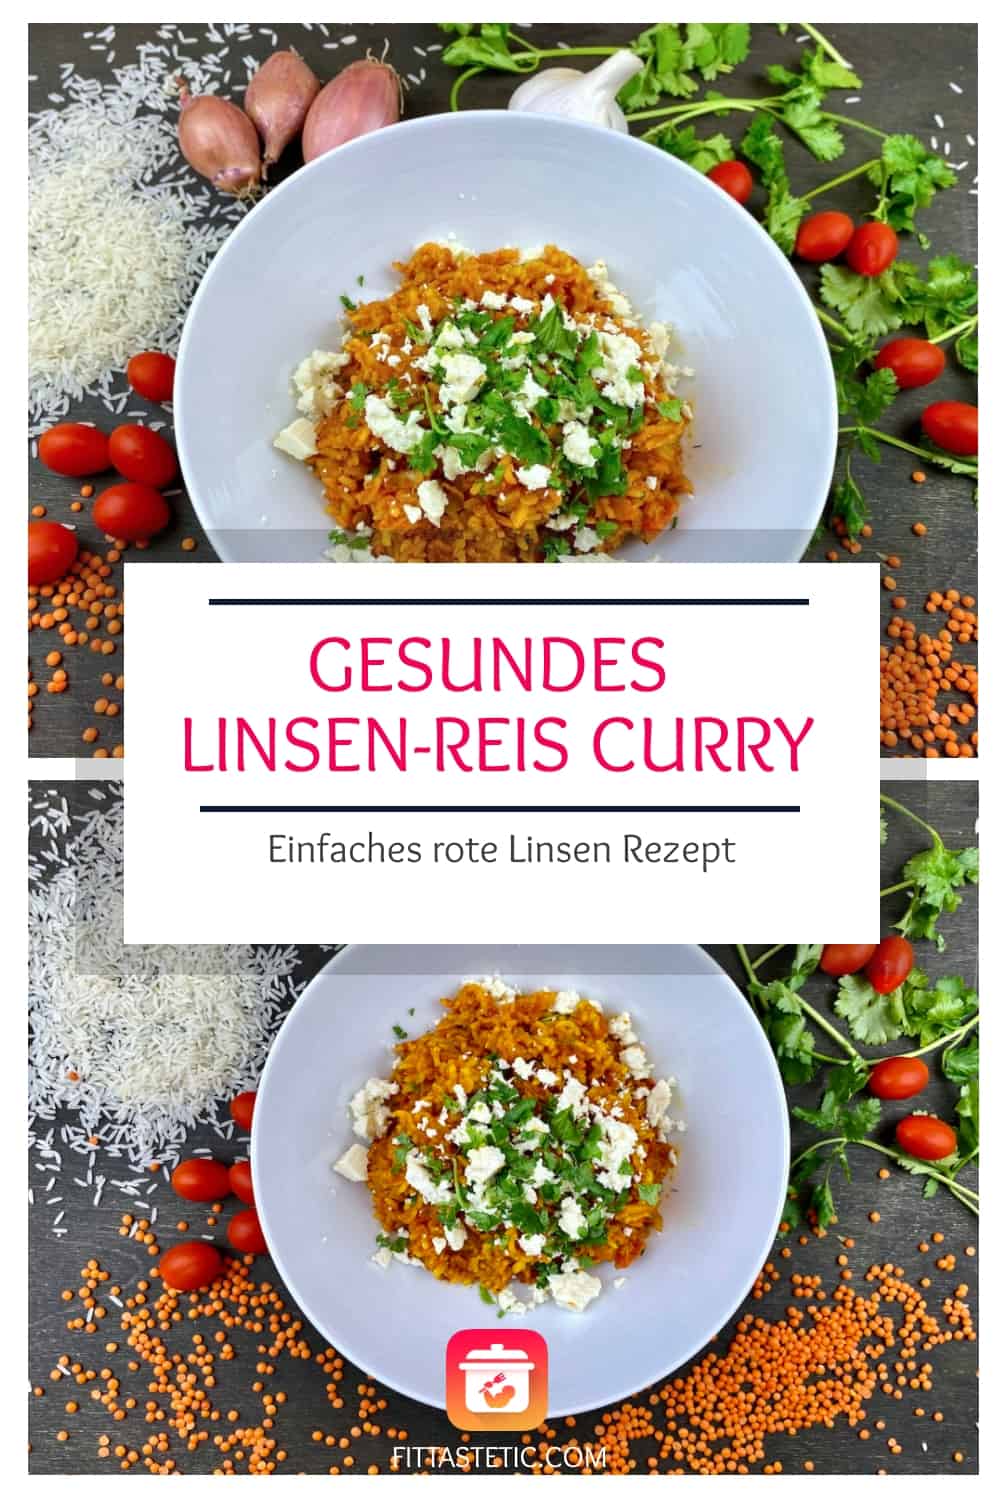 Gesundes Linsen-Reis Curry - Einfaches rote Linsen Rezept